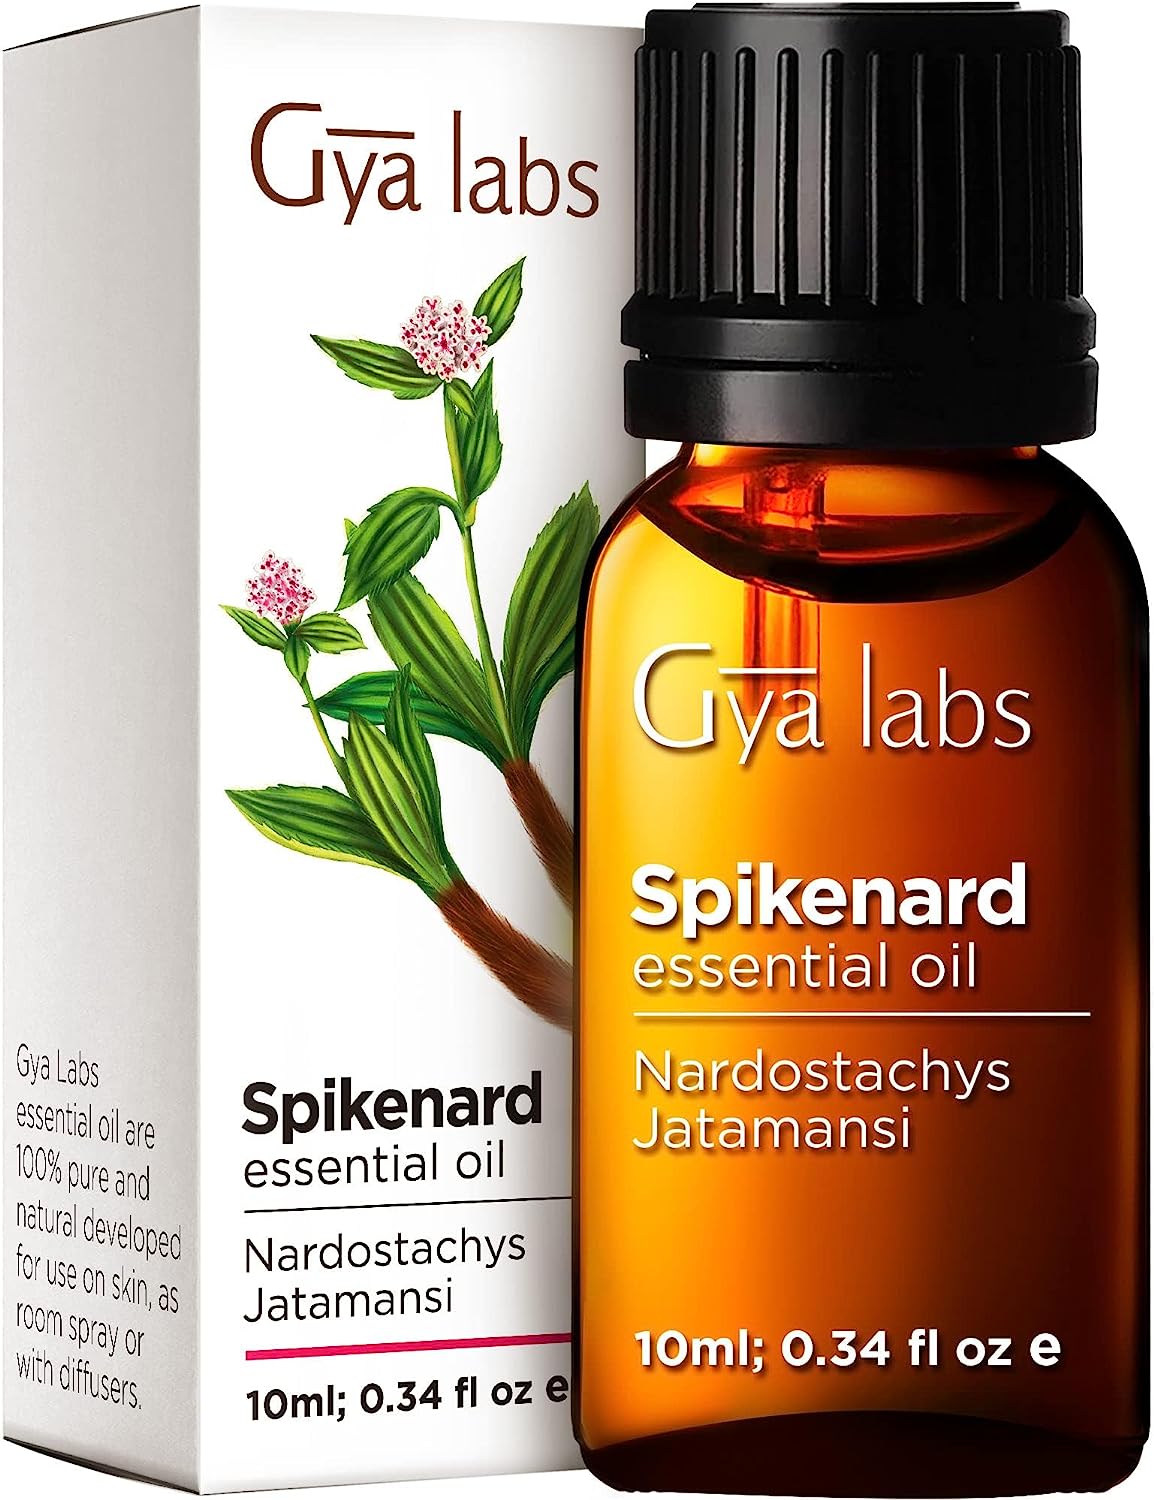 Gya Labs Spikenard Essential Oil